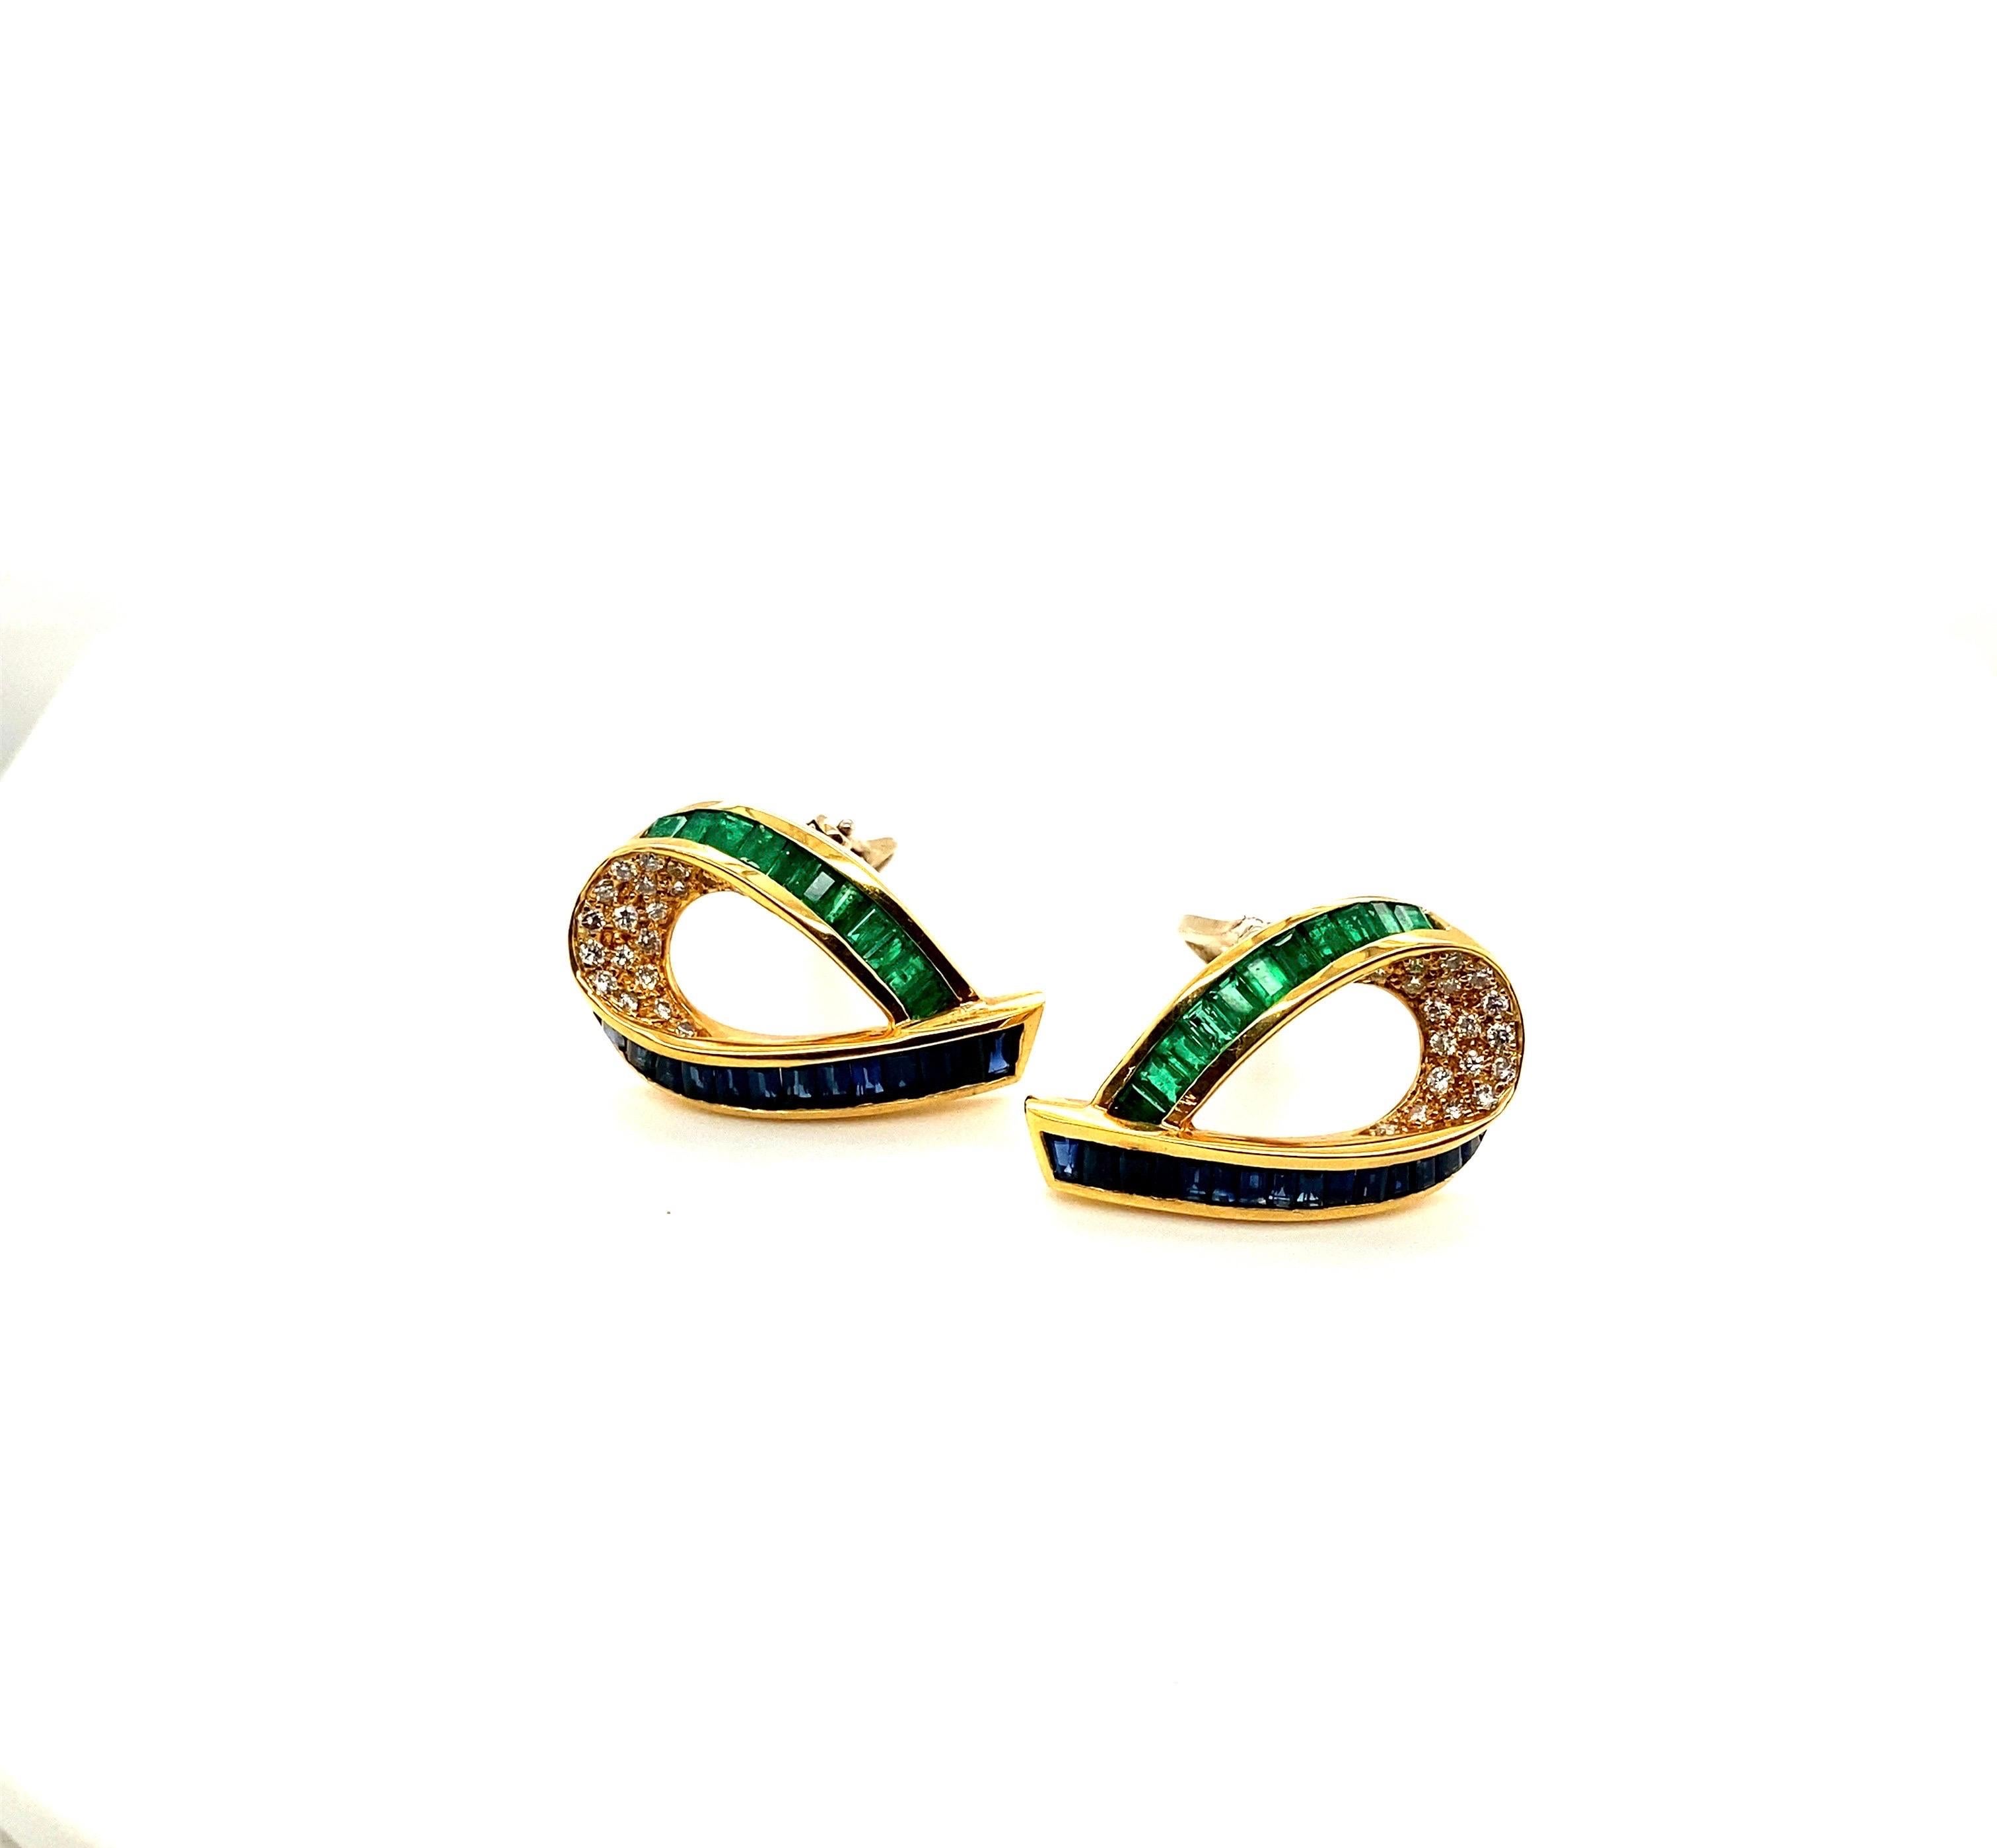 Charles Krypell Jewelry est une marque de joaillerie fine basée à New York qui s'est fait connaître internationalement pour son utilisation exquise de la couleur, ses designs novateurs et son savoir-faire exceptionnel. Ces boucles d'oreilles en sont